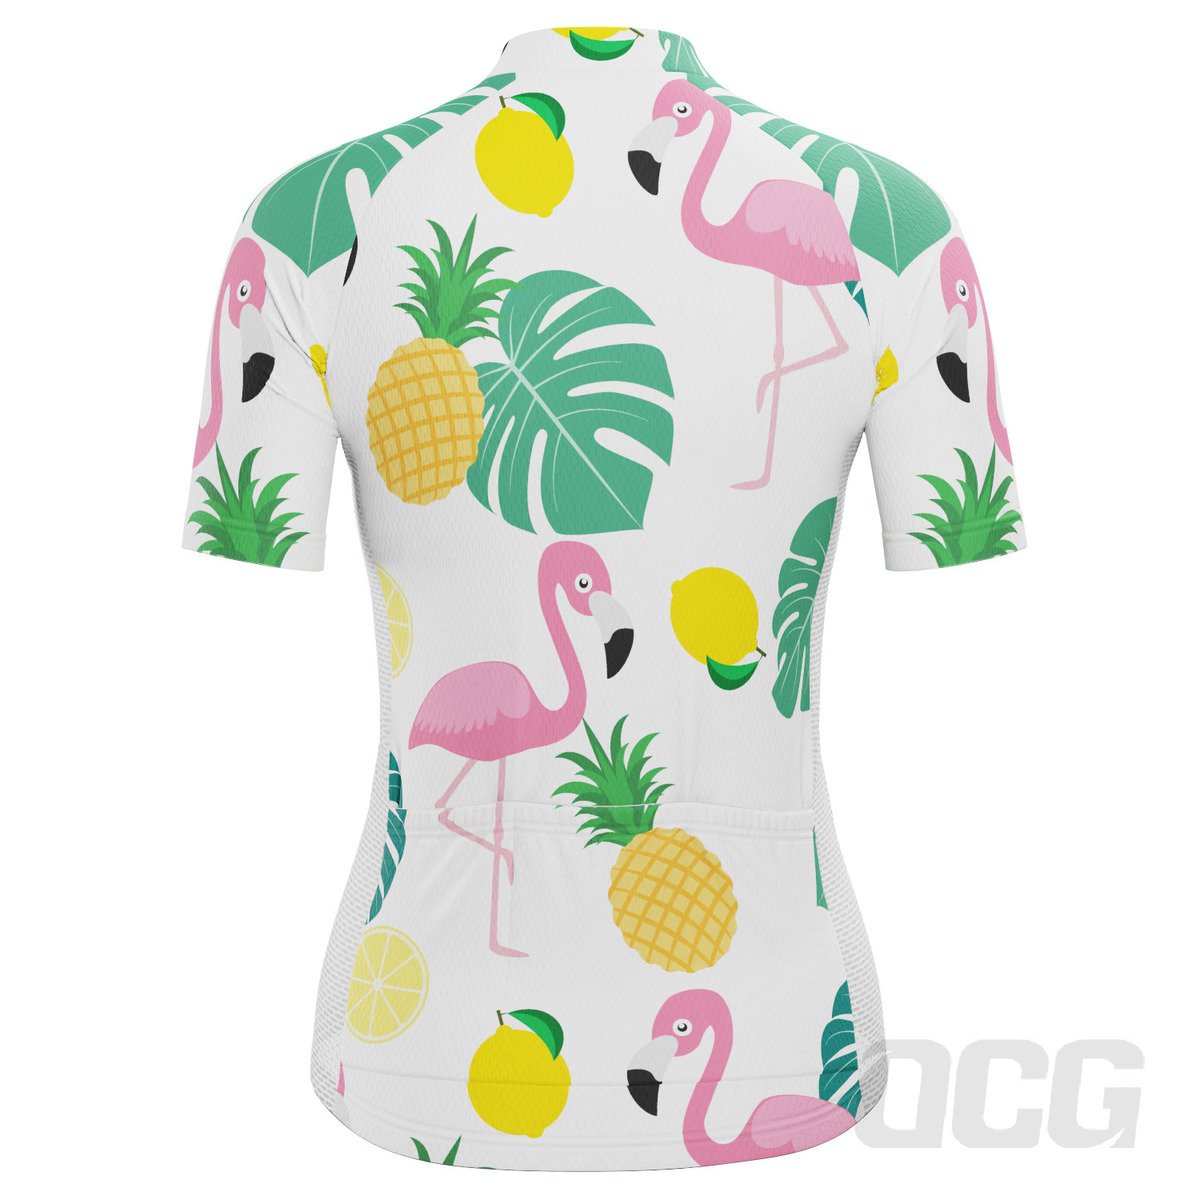 Women's Fruity Flamingo Short Sleeve Cycling Jersey